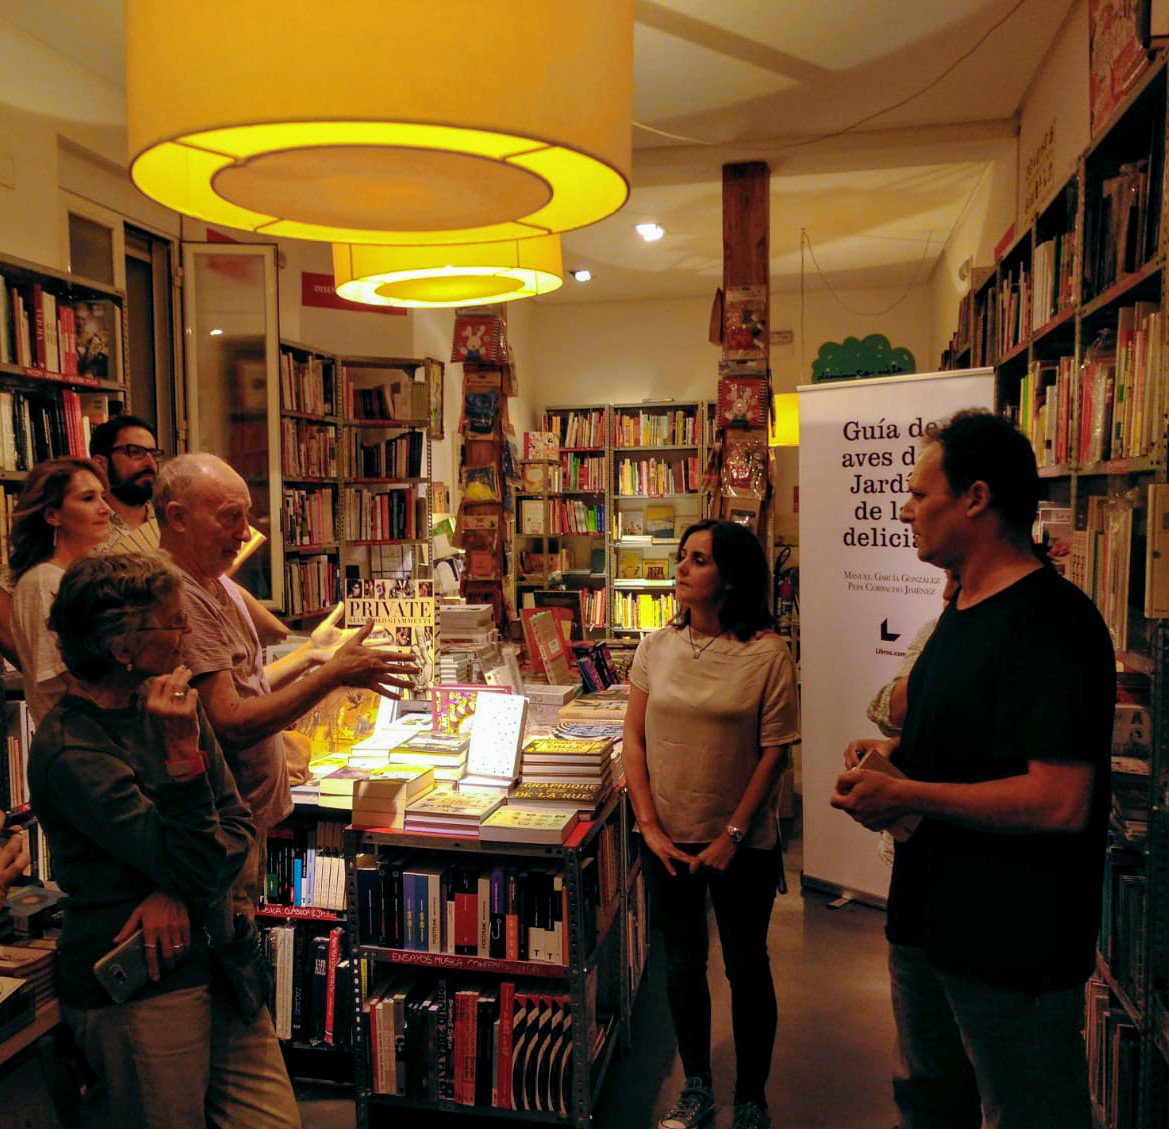 La presentación, charla, coloquio en la librería PANTA RHEI, una de las librerías más chulas de Madrid, fue increible, gracias a los amigos de @AvesdelBosco que se acercaron. 🦆🐦✨@libreriasdemadrid #libreriasbonitas